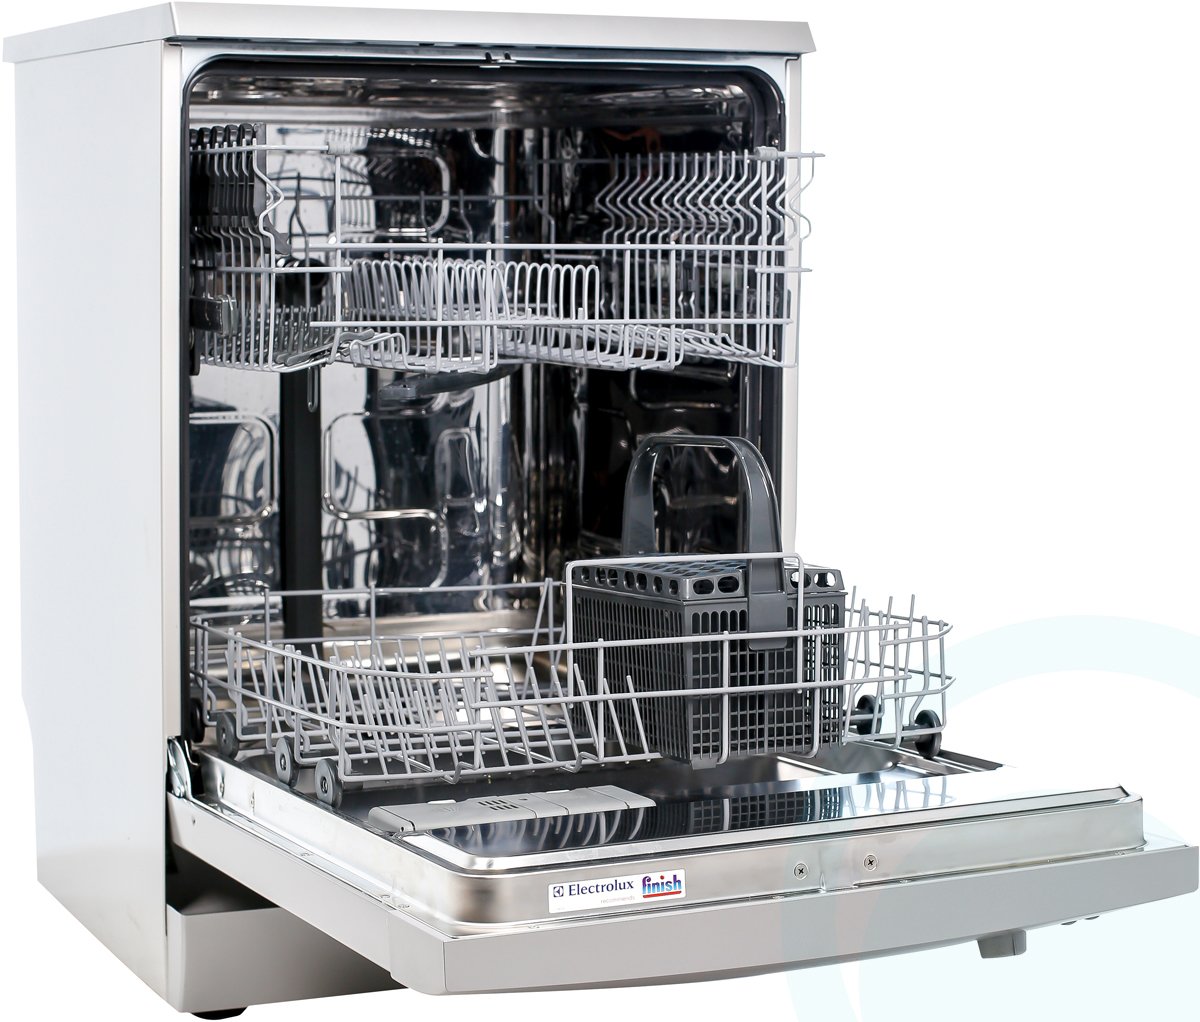 dishlex dishwasher dsf6106w